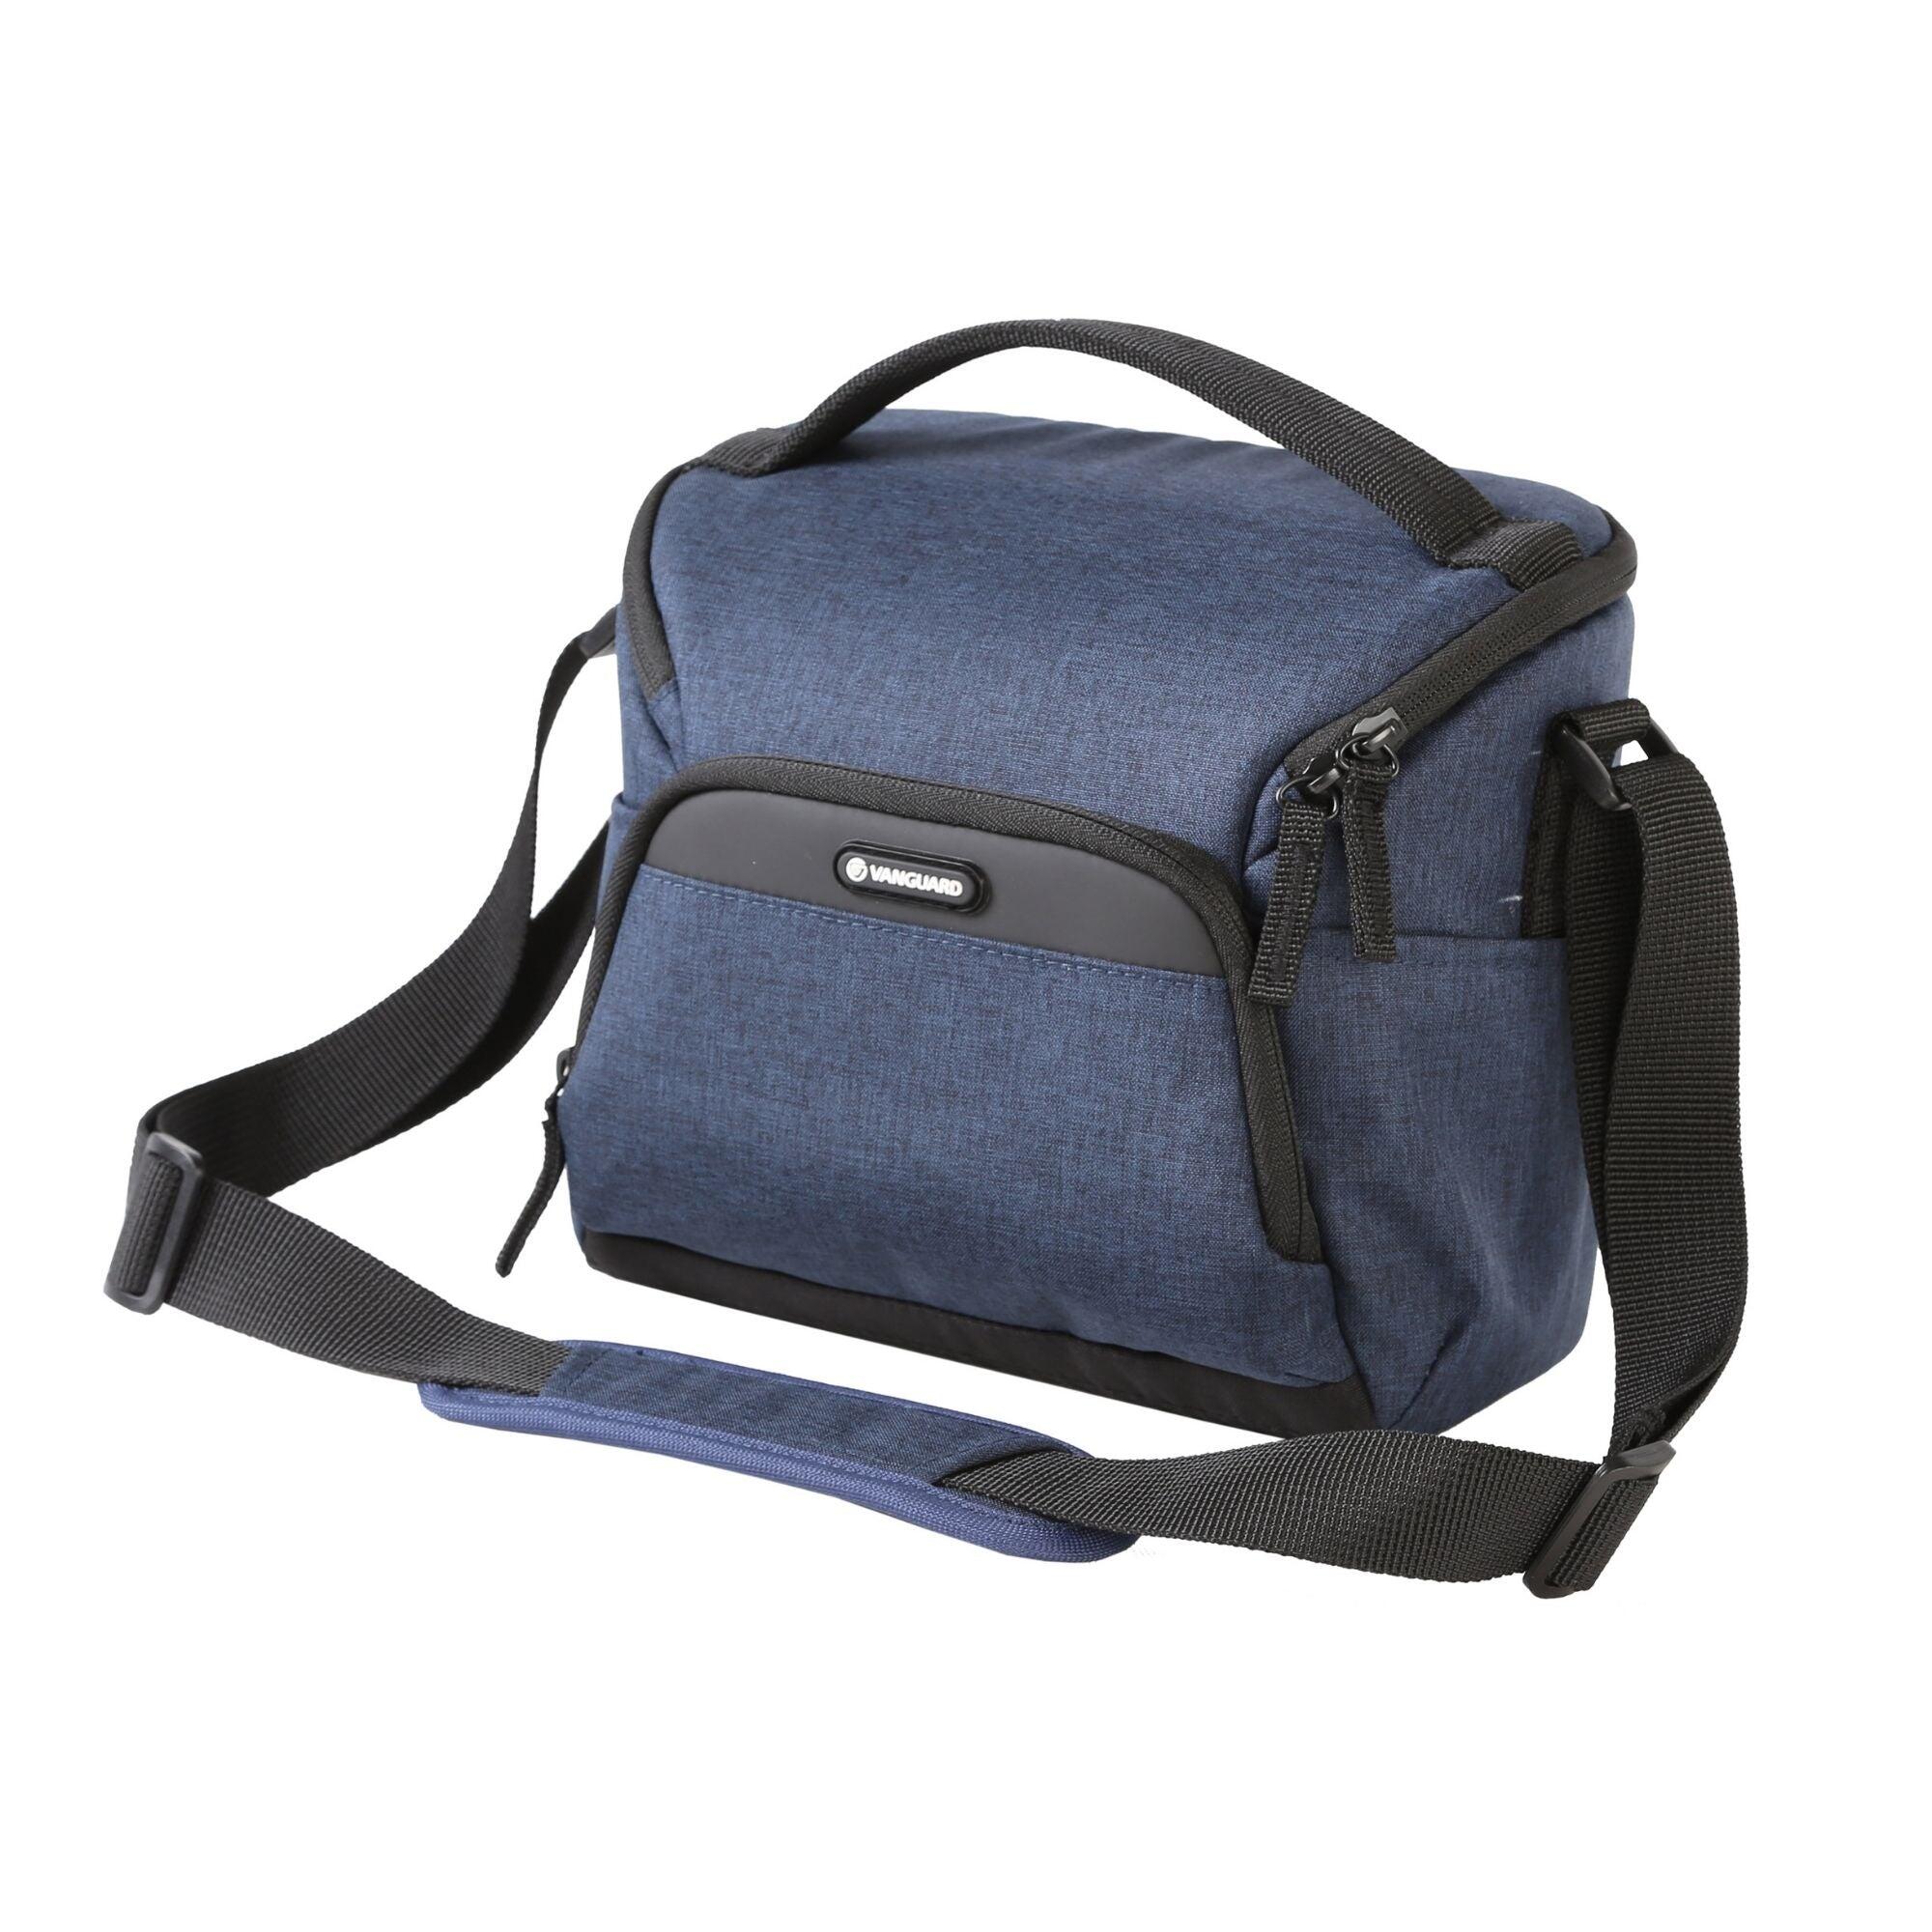 VANGUARD VESTA Aspire 21 NV Shoulder Bag - Blue